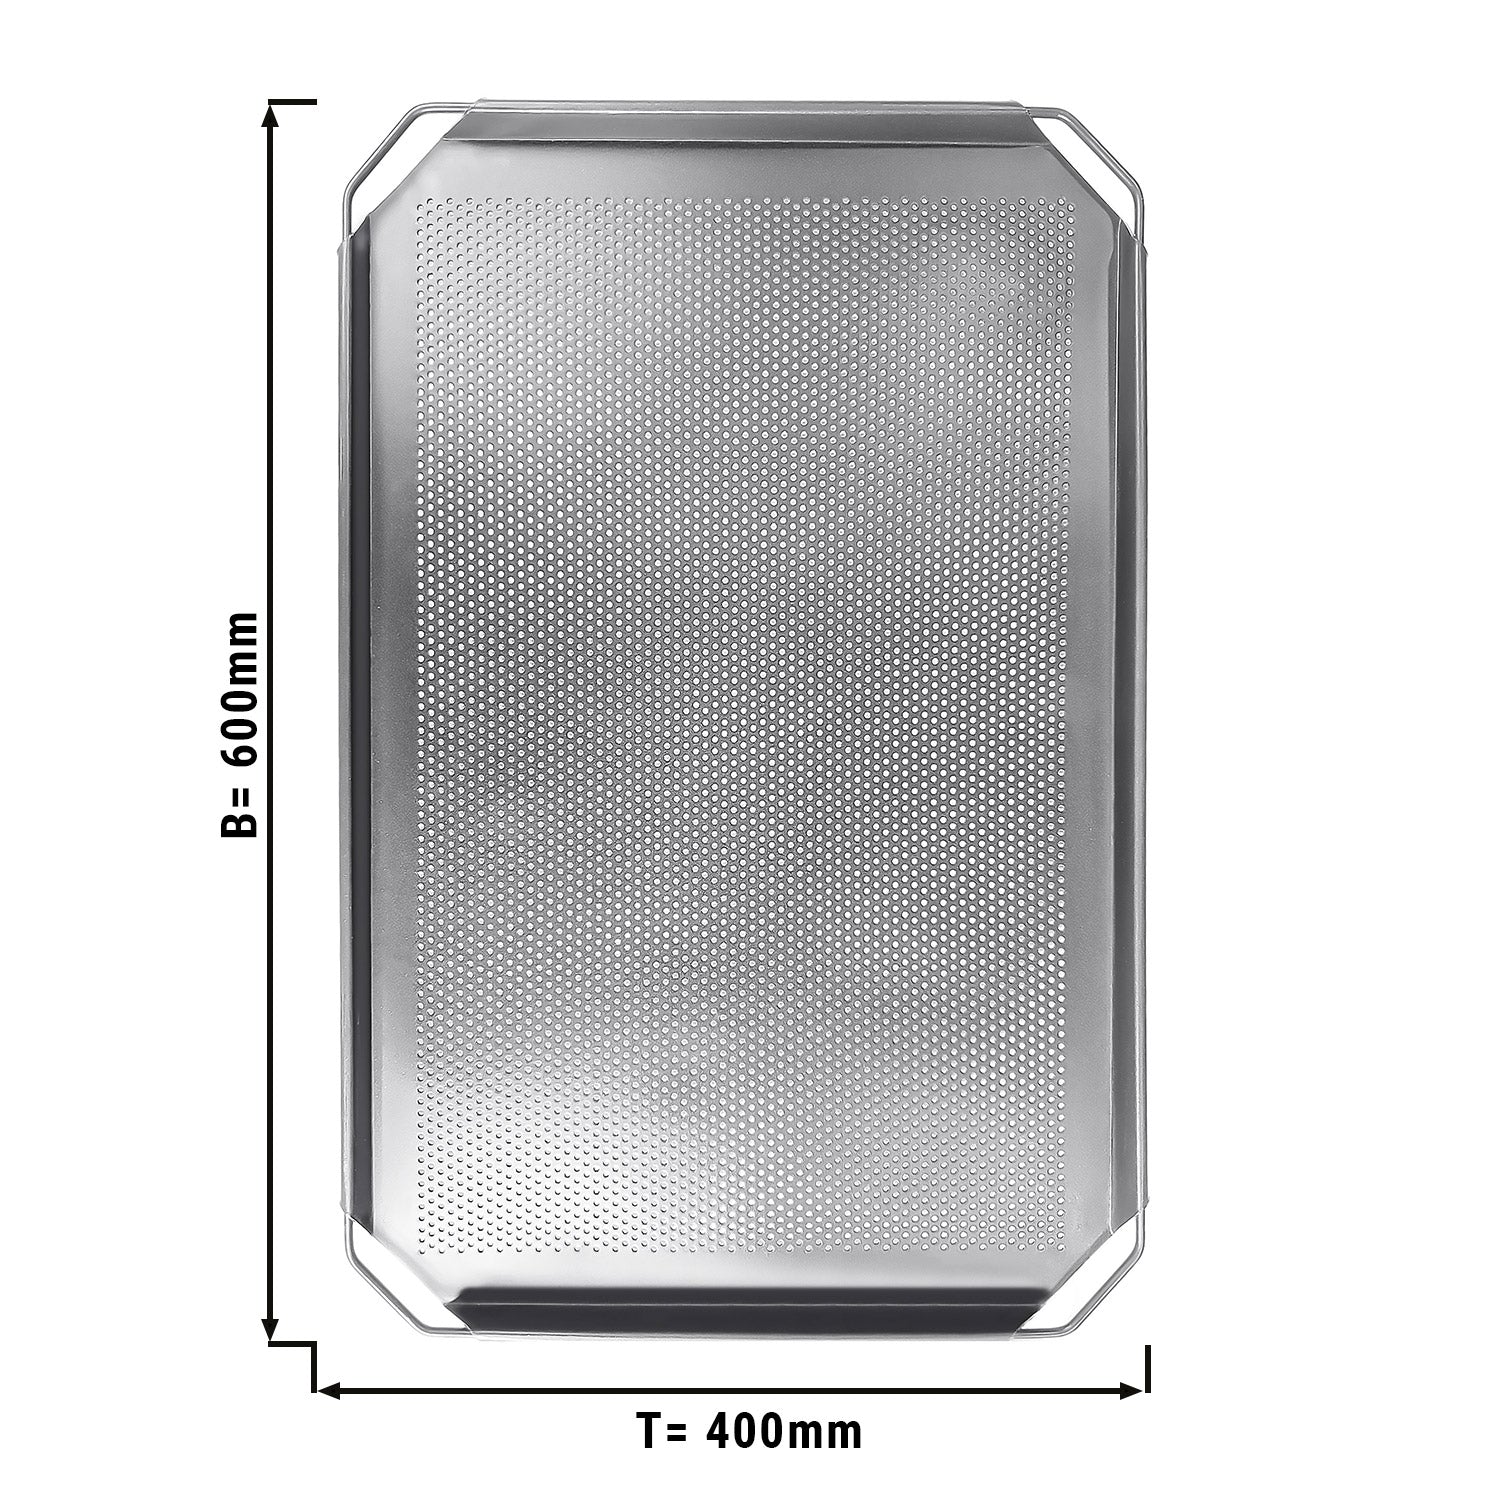 Bageplade i aluminium EN 400x600